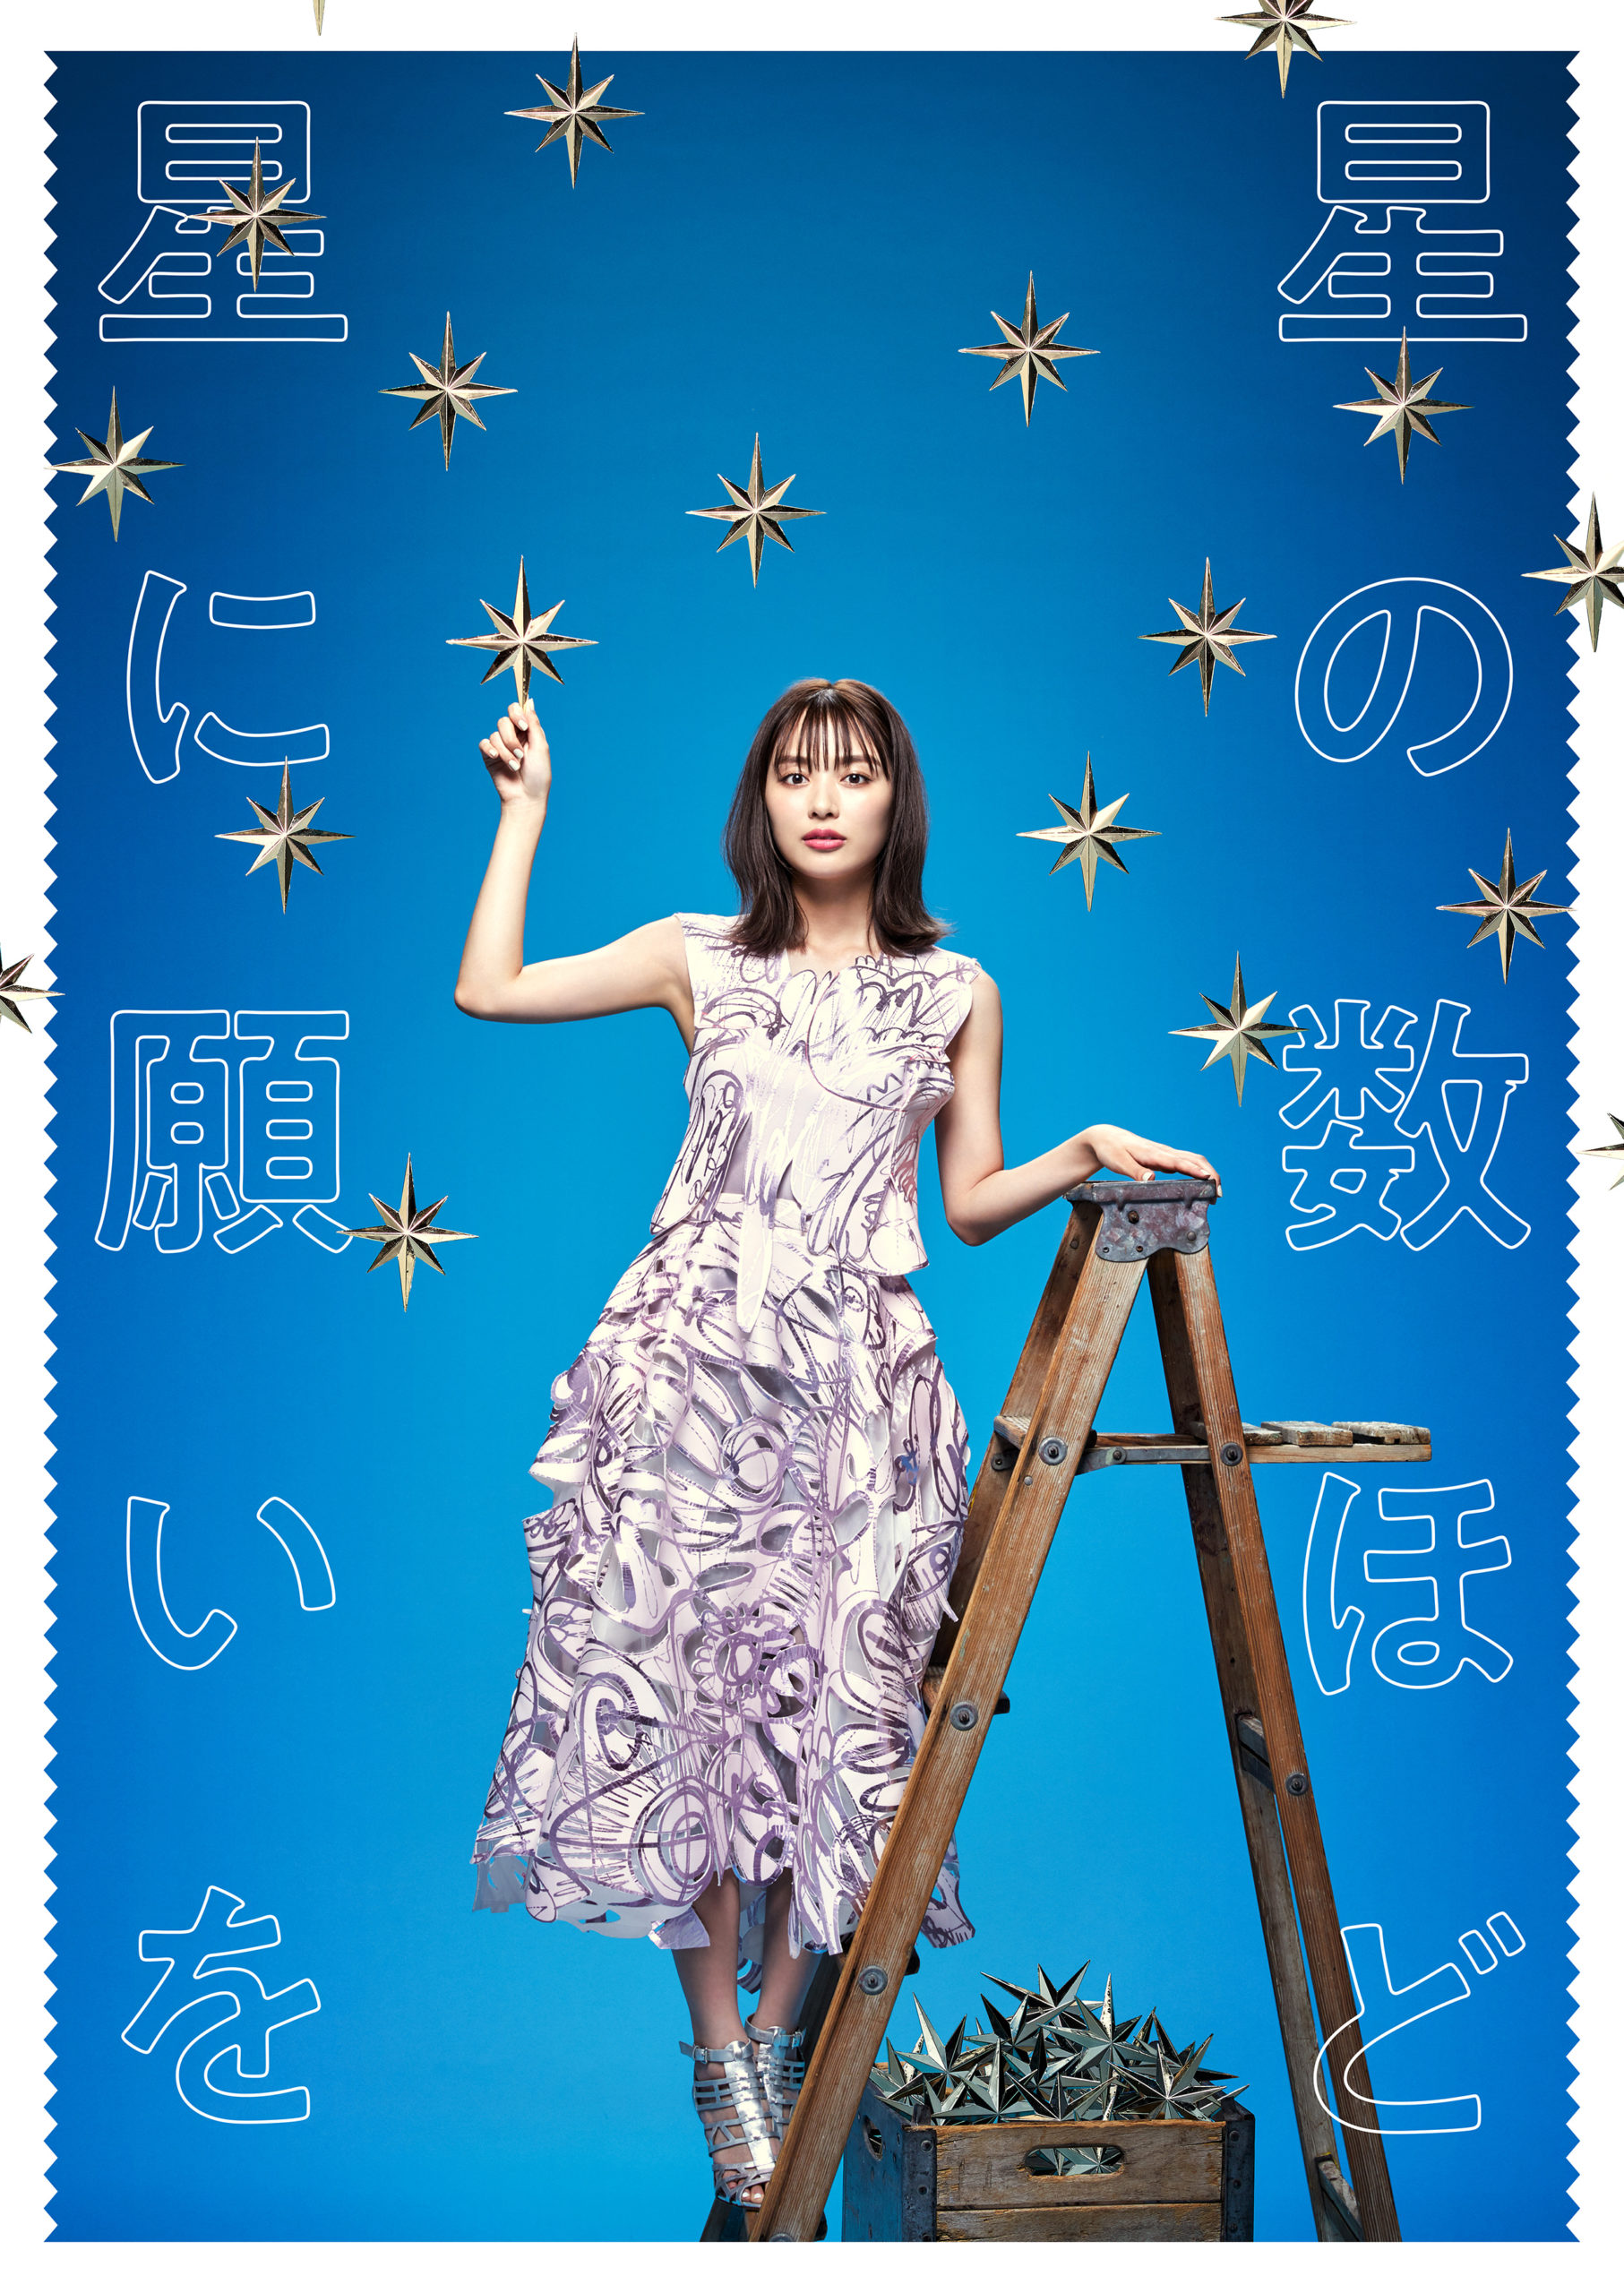 内田理央さんの舞台のポスター